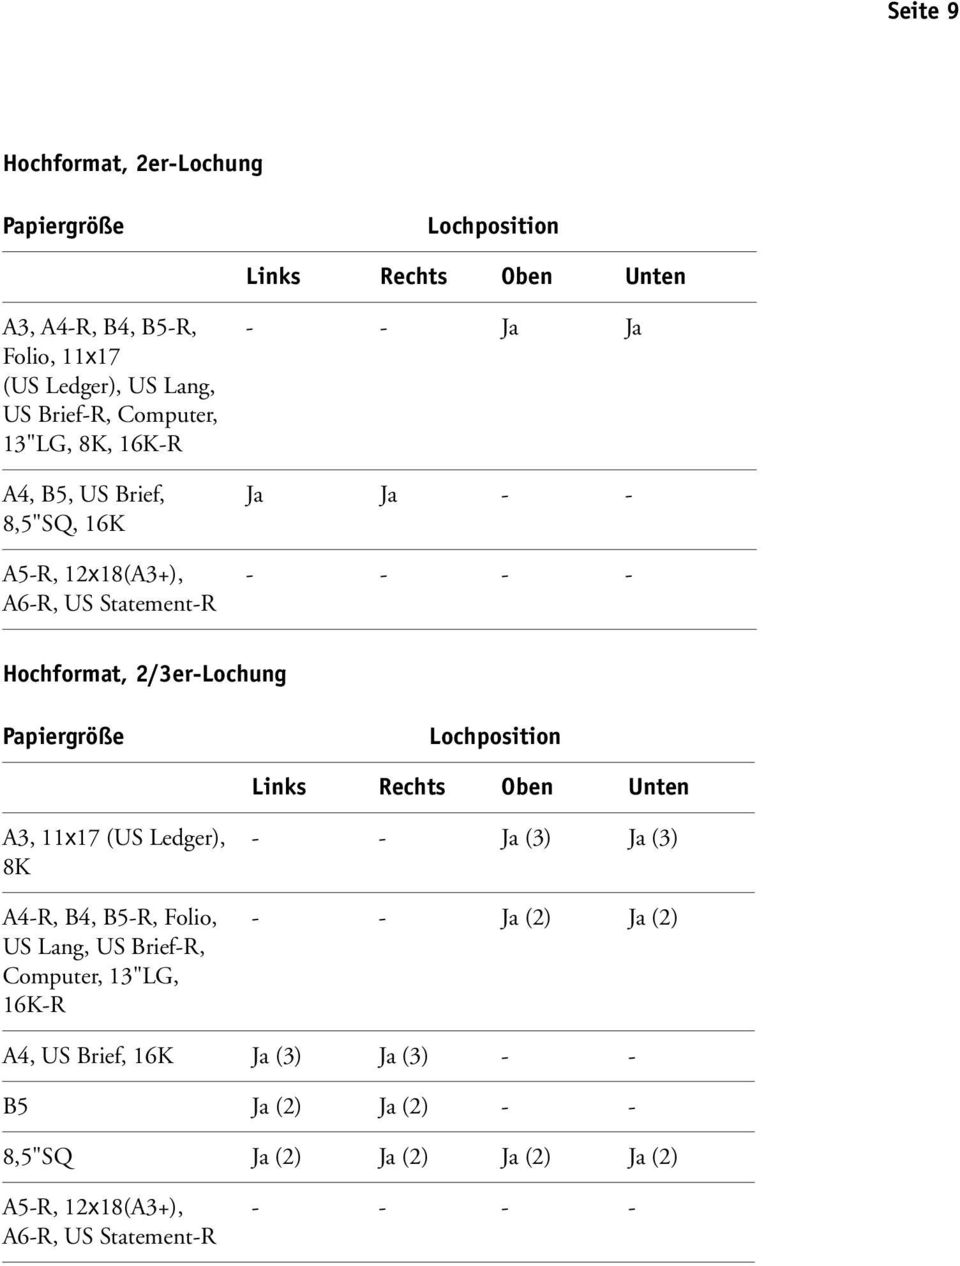 Papiergröße Lochposition Links Rechts Oben Unten A3, 11x17 (US Ledger), 8K A4-R, B4, B5-R, Folio, US Lang, US Brief-R, Computer, 13"LG, 16K-R - - Ja (3)